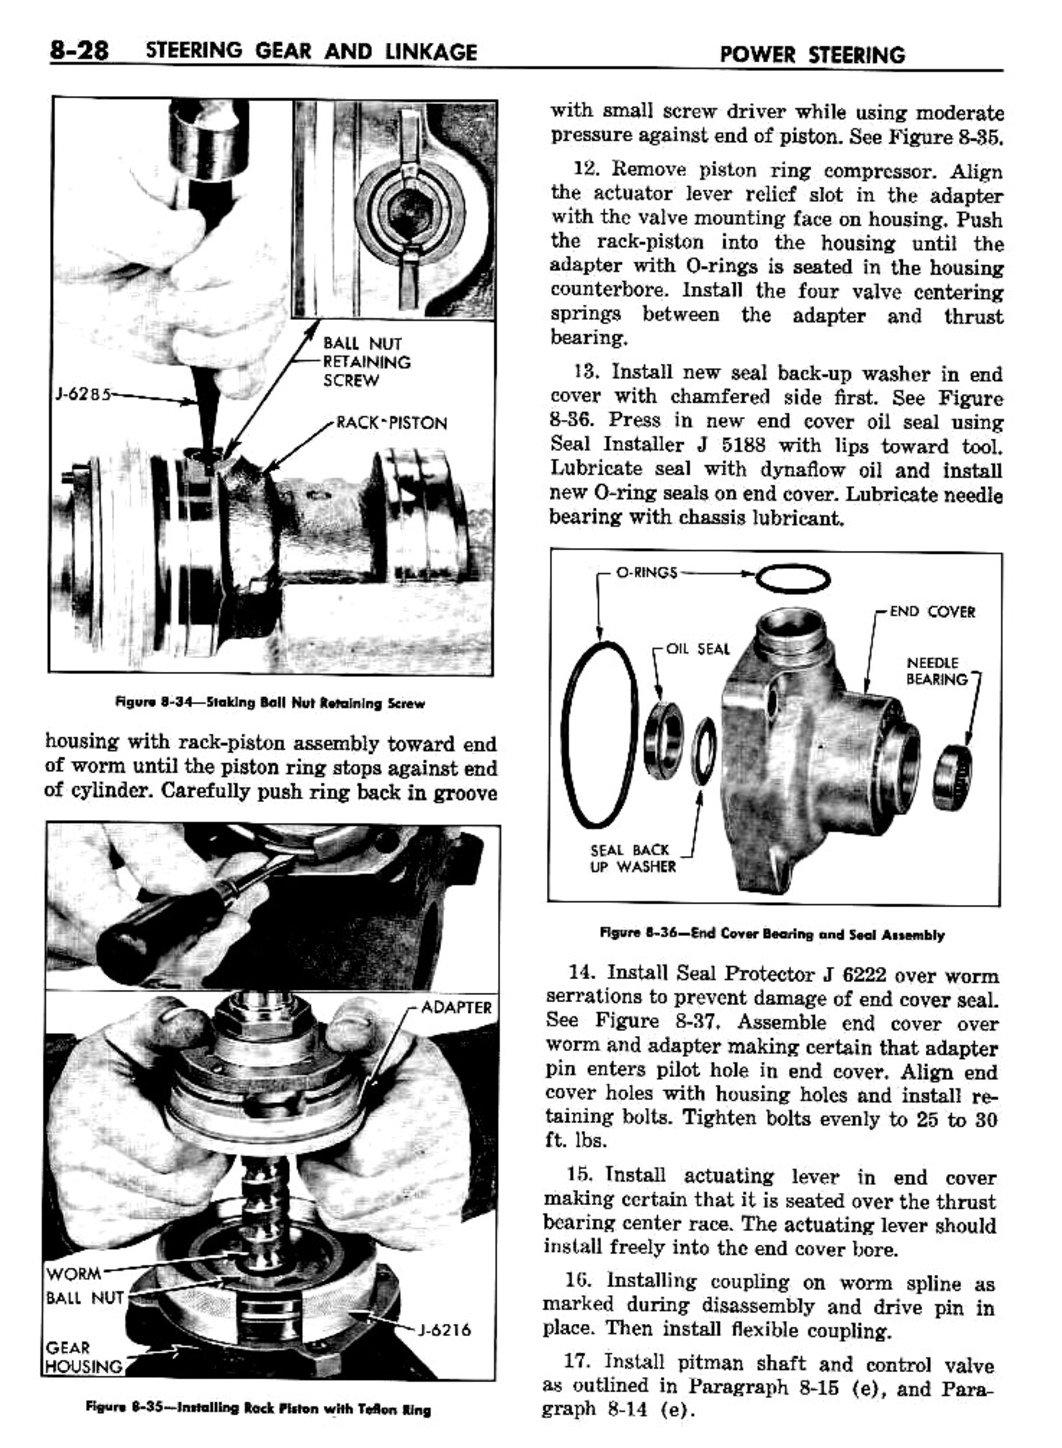 n_09 1957 Buick Shop Manual - Steering-028-028.jpg